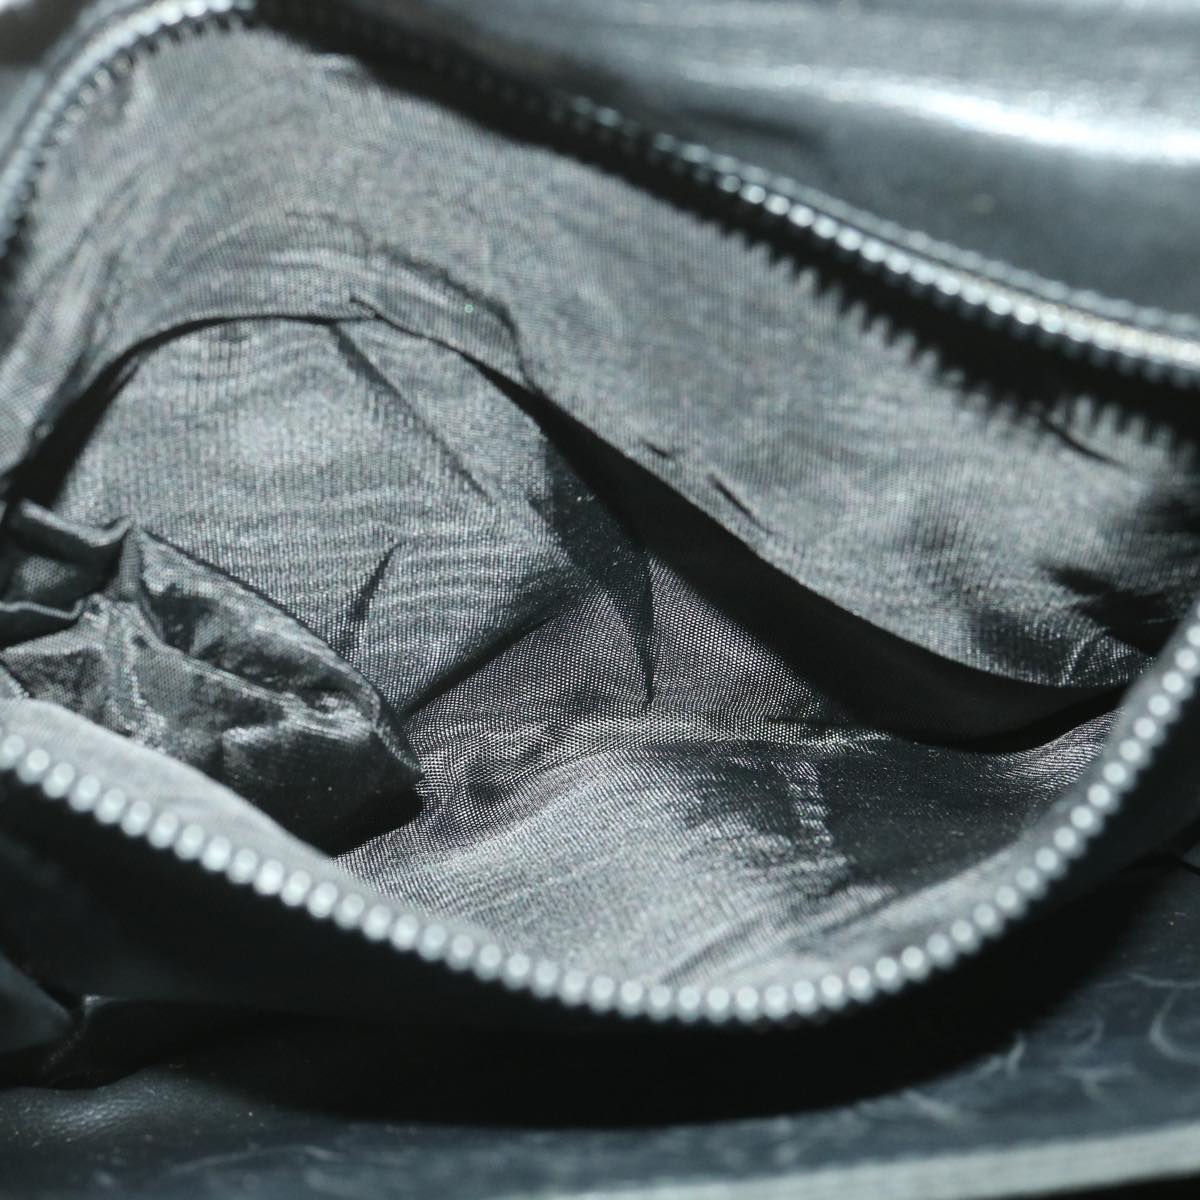 CELINE Shoulder Bag Leather Black Auth 34008